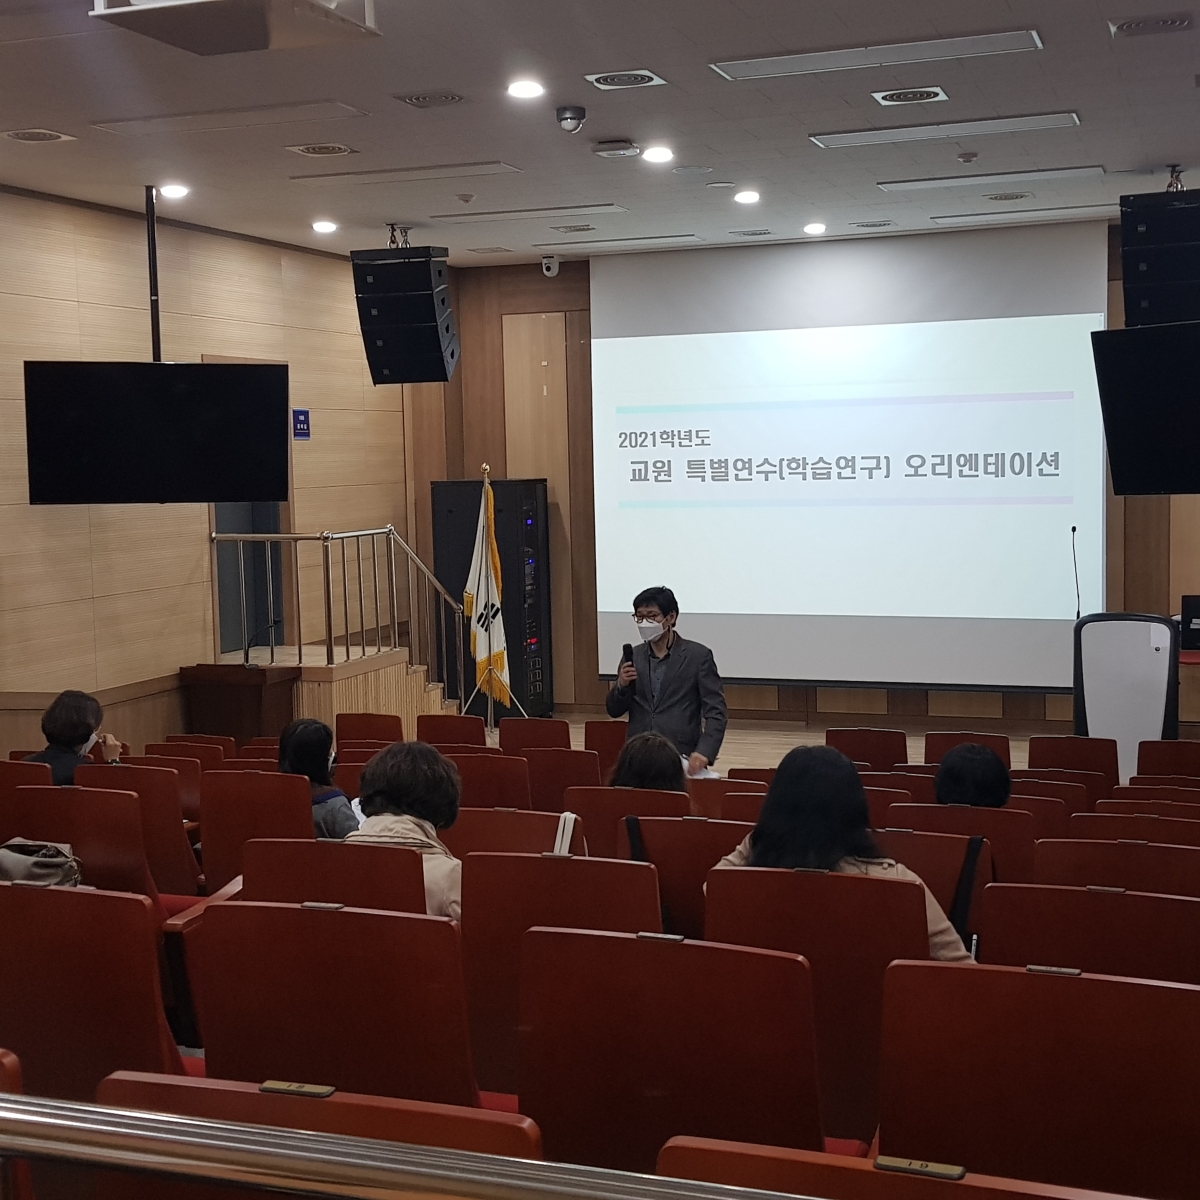 2021학년도 교원 특별연수(학습연구) 오리엔테이션 개최